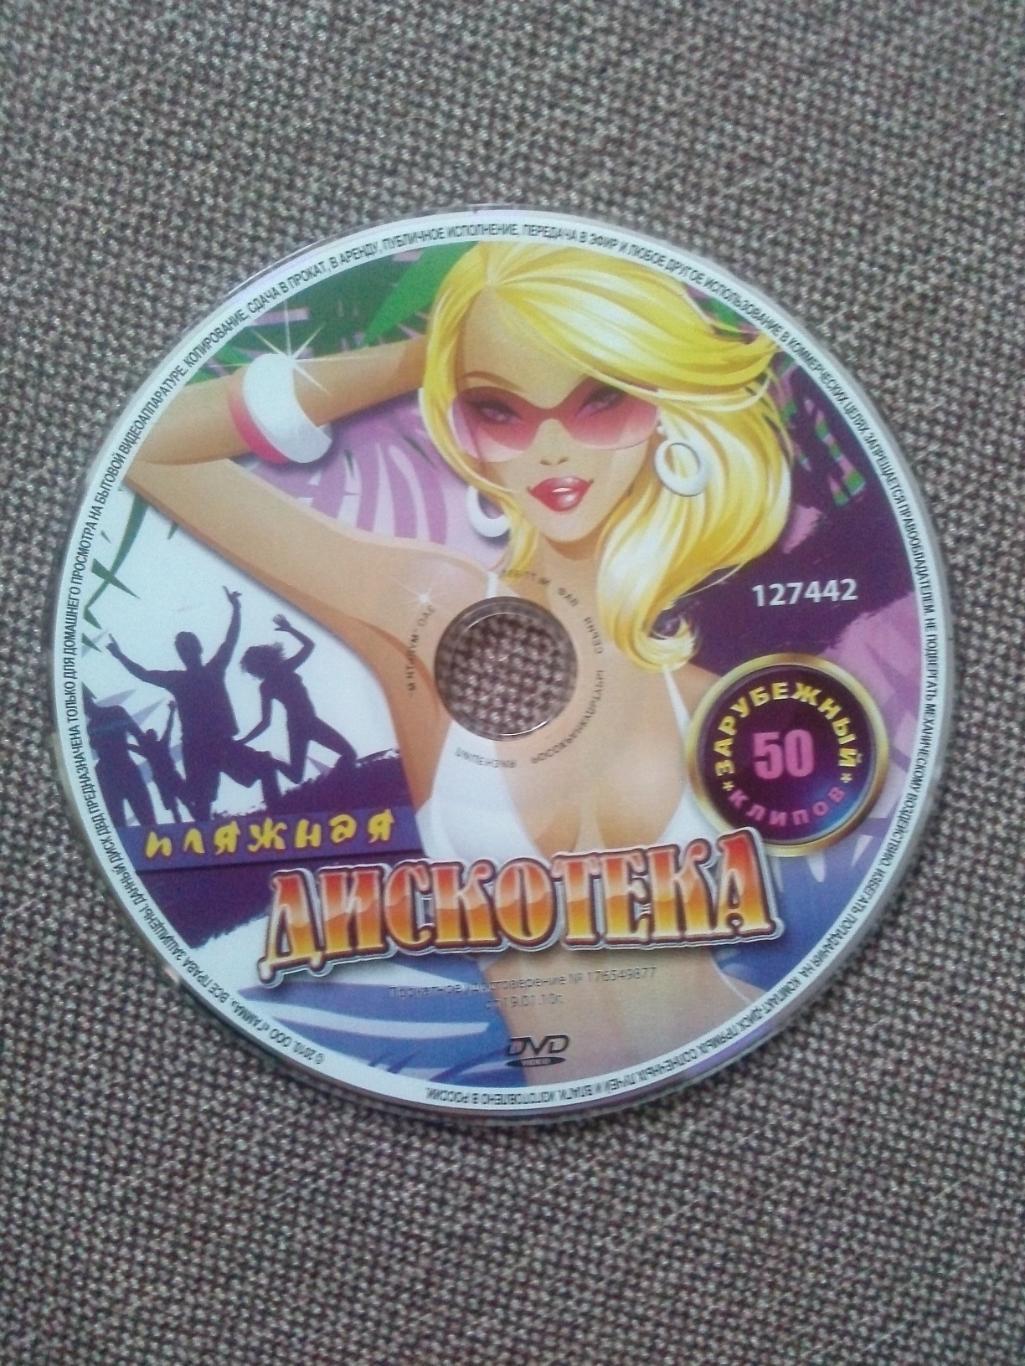 DVD диск : Пляжная дискотека (50 видеоклипов) Поп танцевальная музыка (Клипы) 4